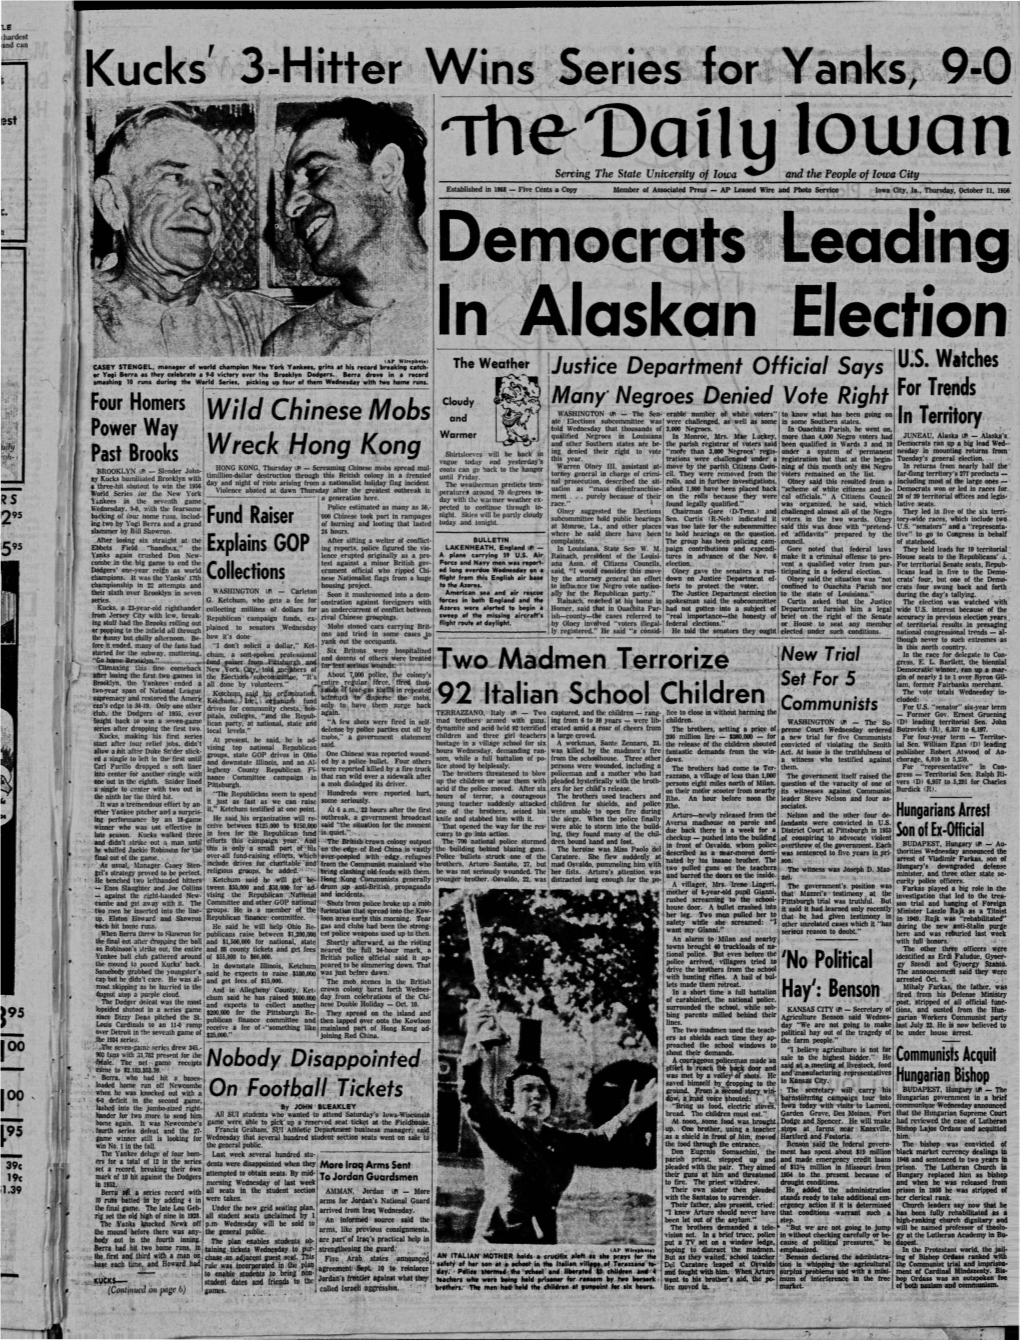 Daily Iowan (Iowa City, Iowa), 1956-10-11